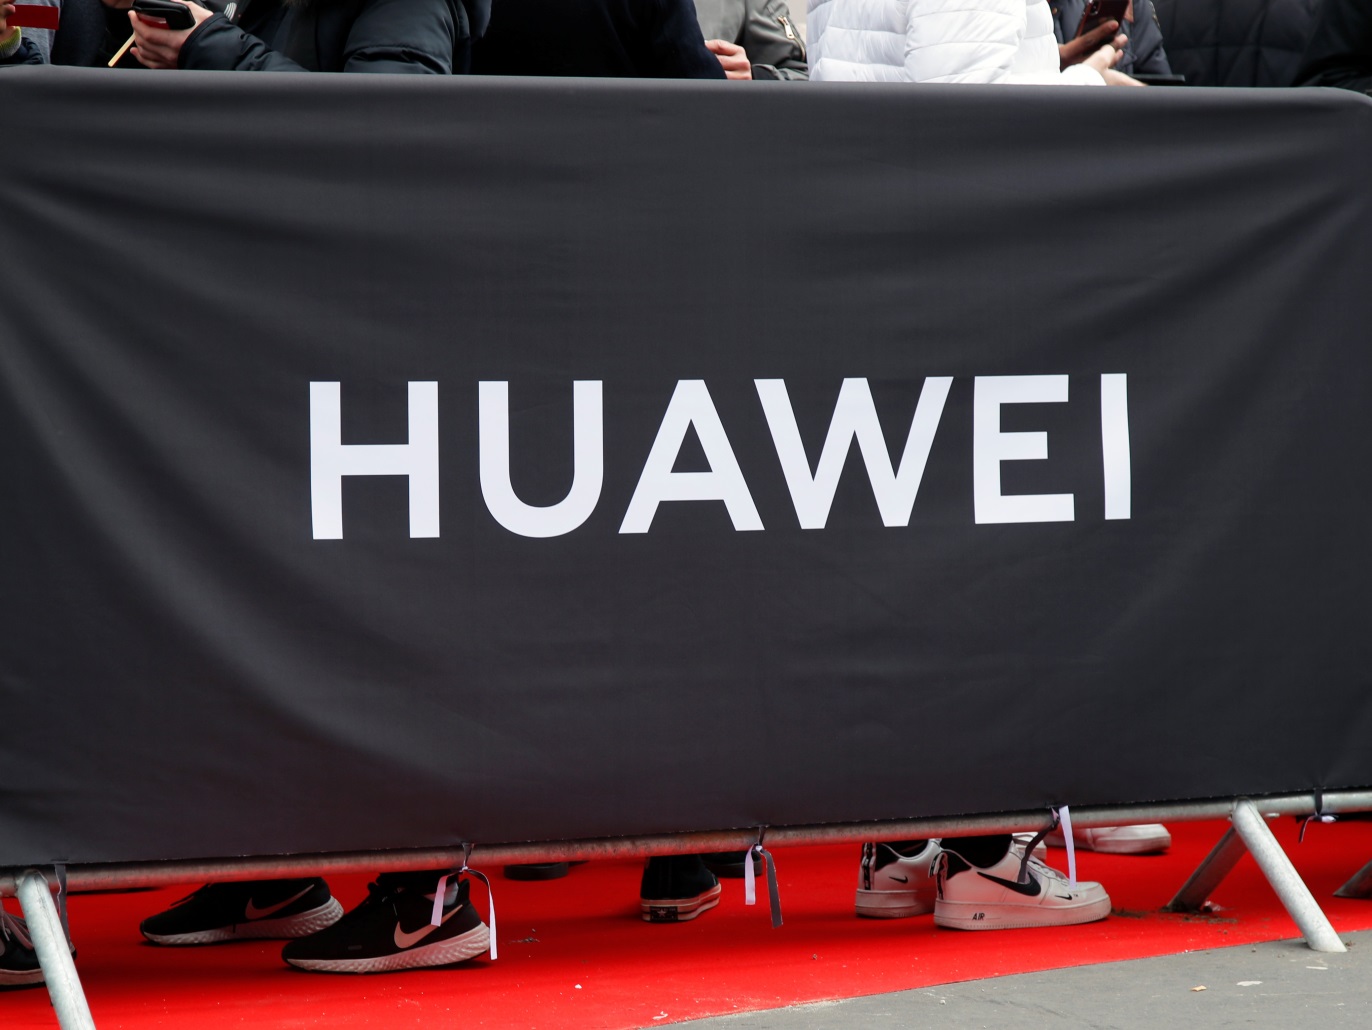 Huawei dépasse-t-elle les sanctions occidentales? Le défi chinois